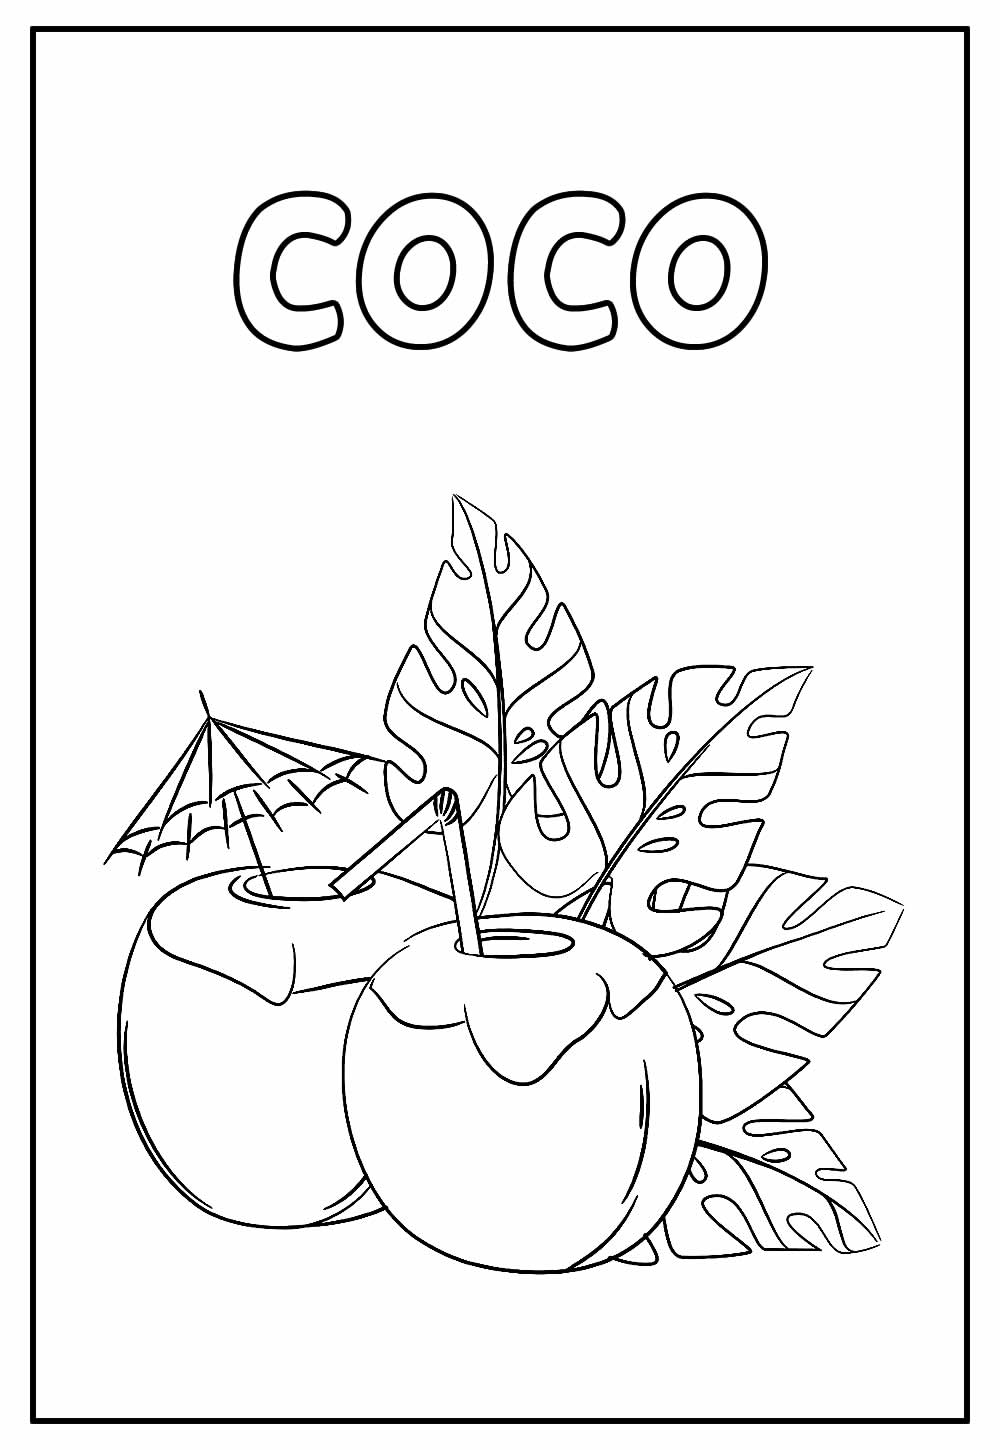 Desenho Educativo de Coco para colorir